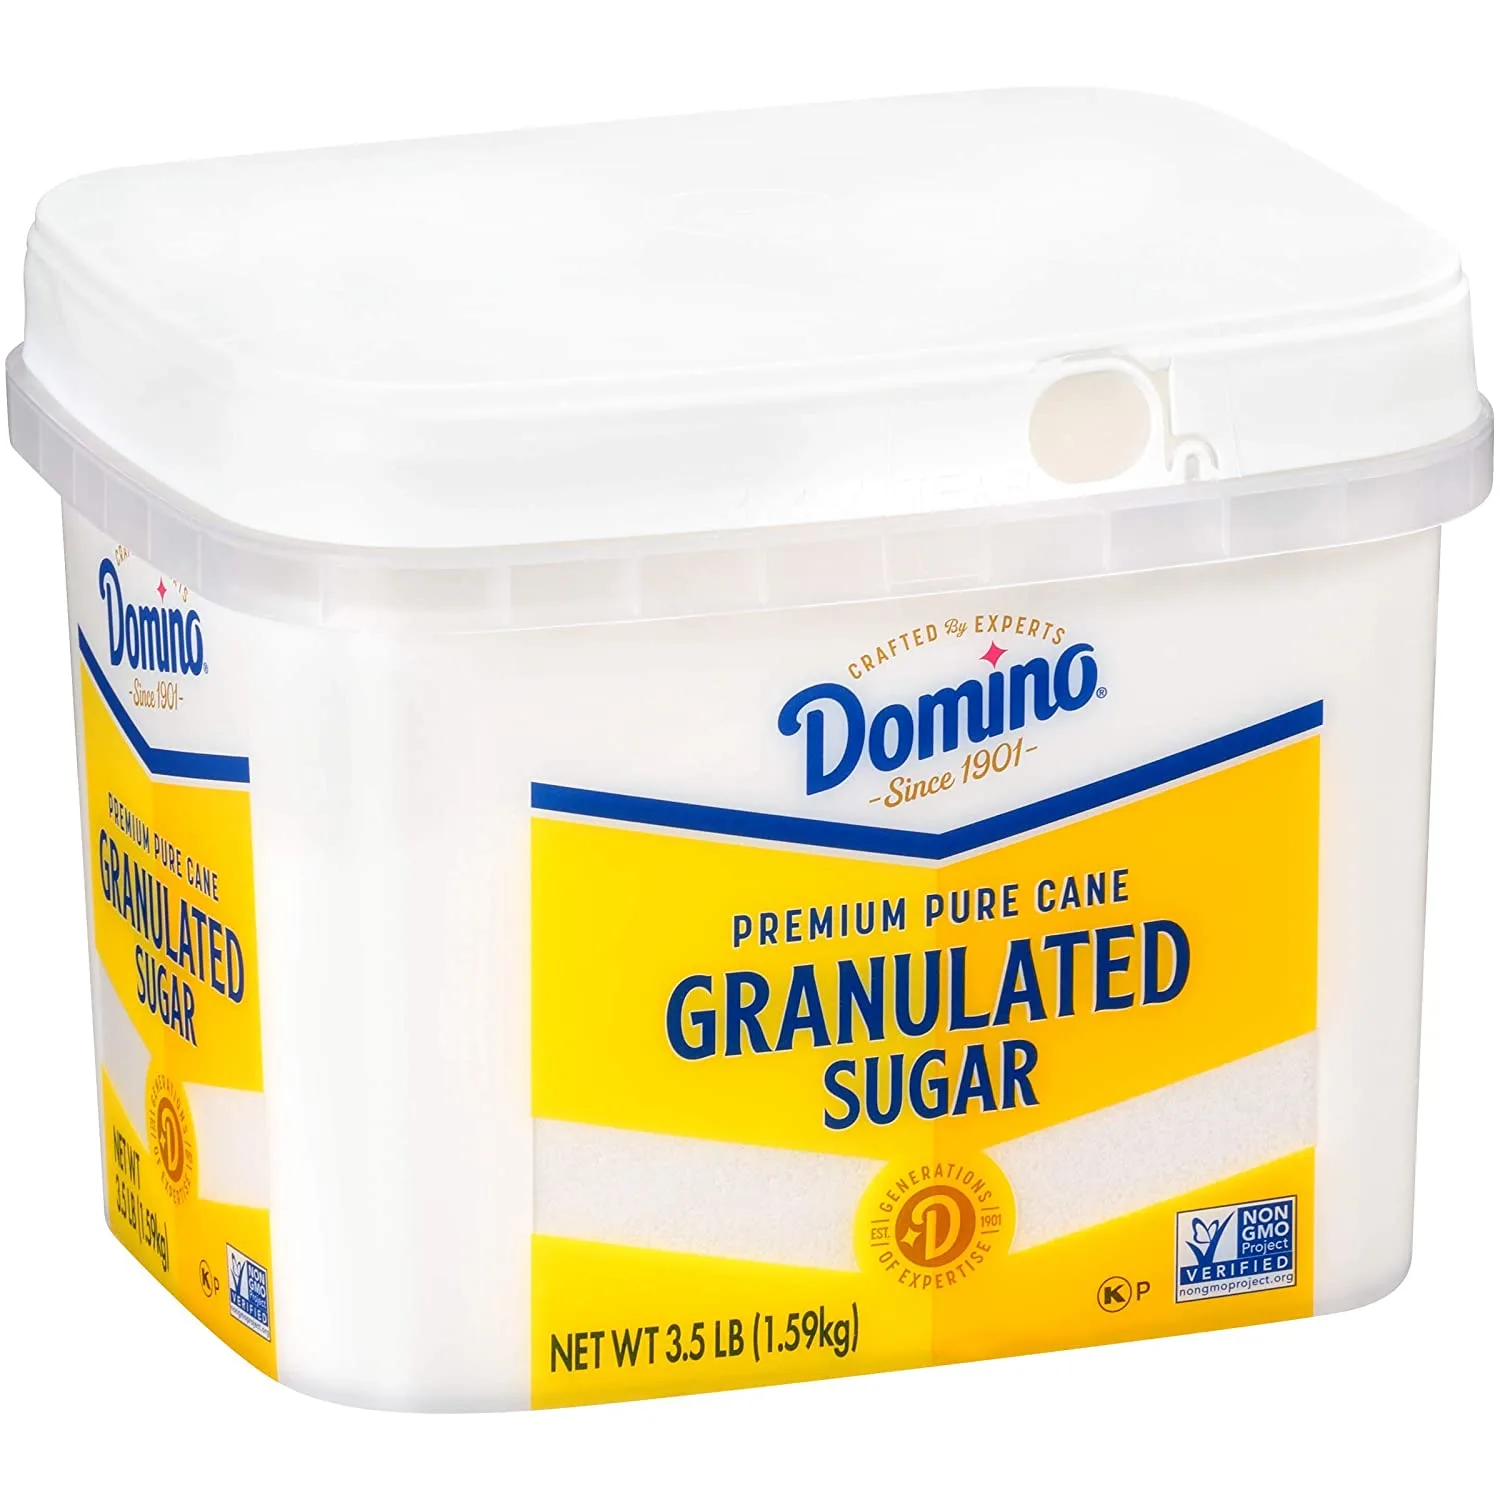 Domino Granulated Pure Cane Sugar